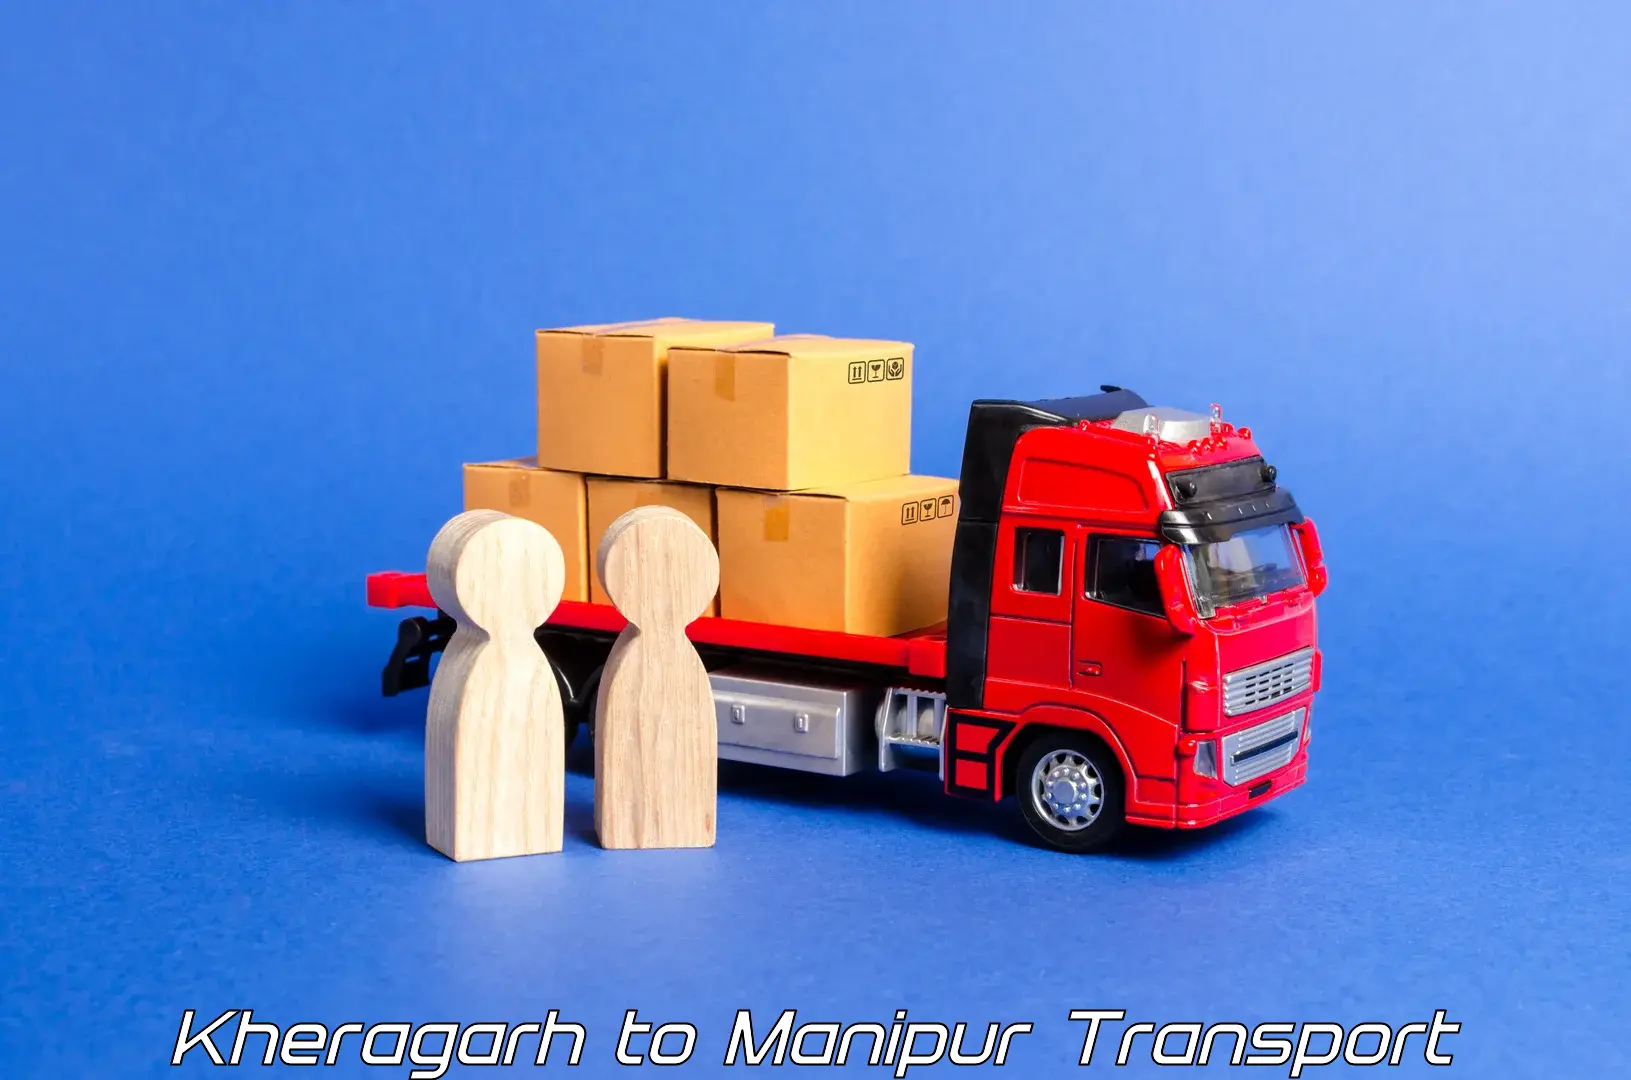 Land transport services Kheragarh to Chandel